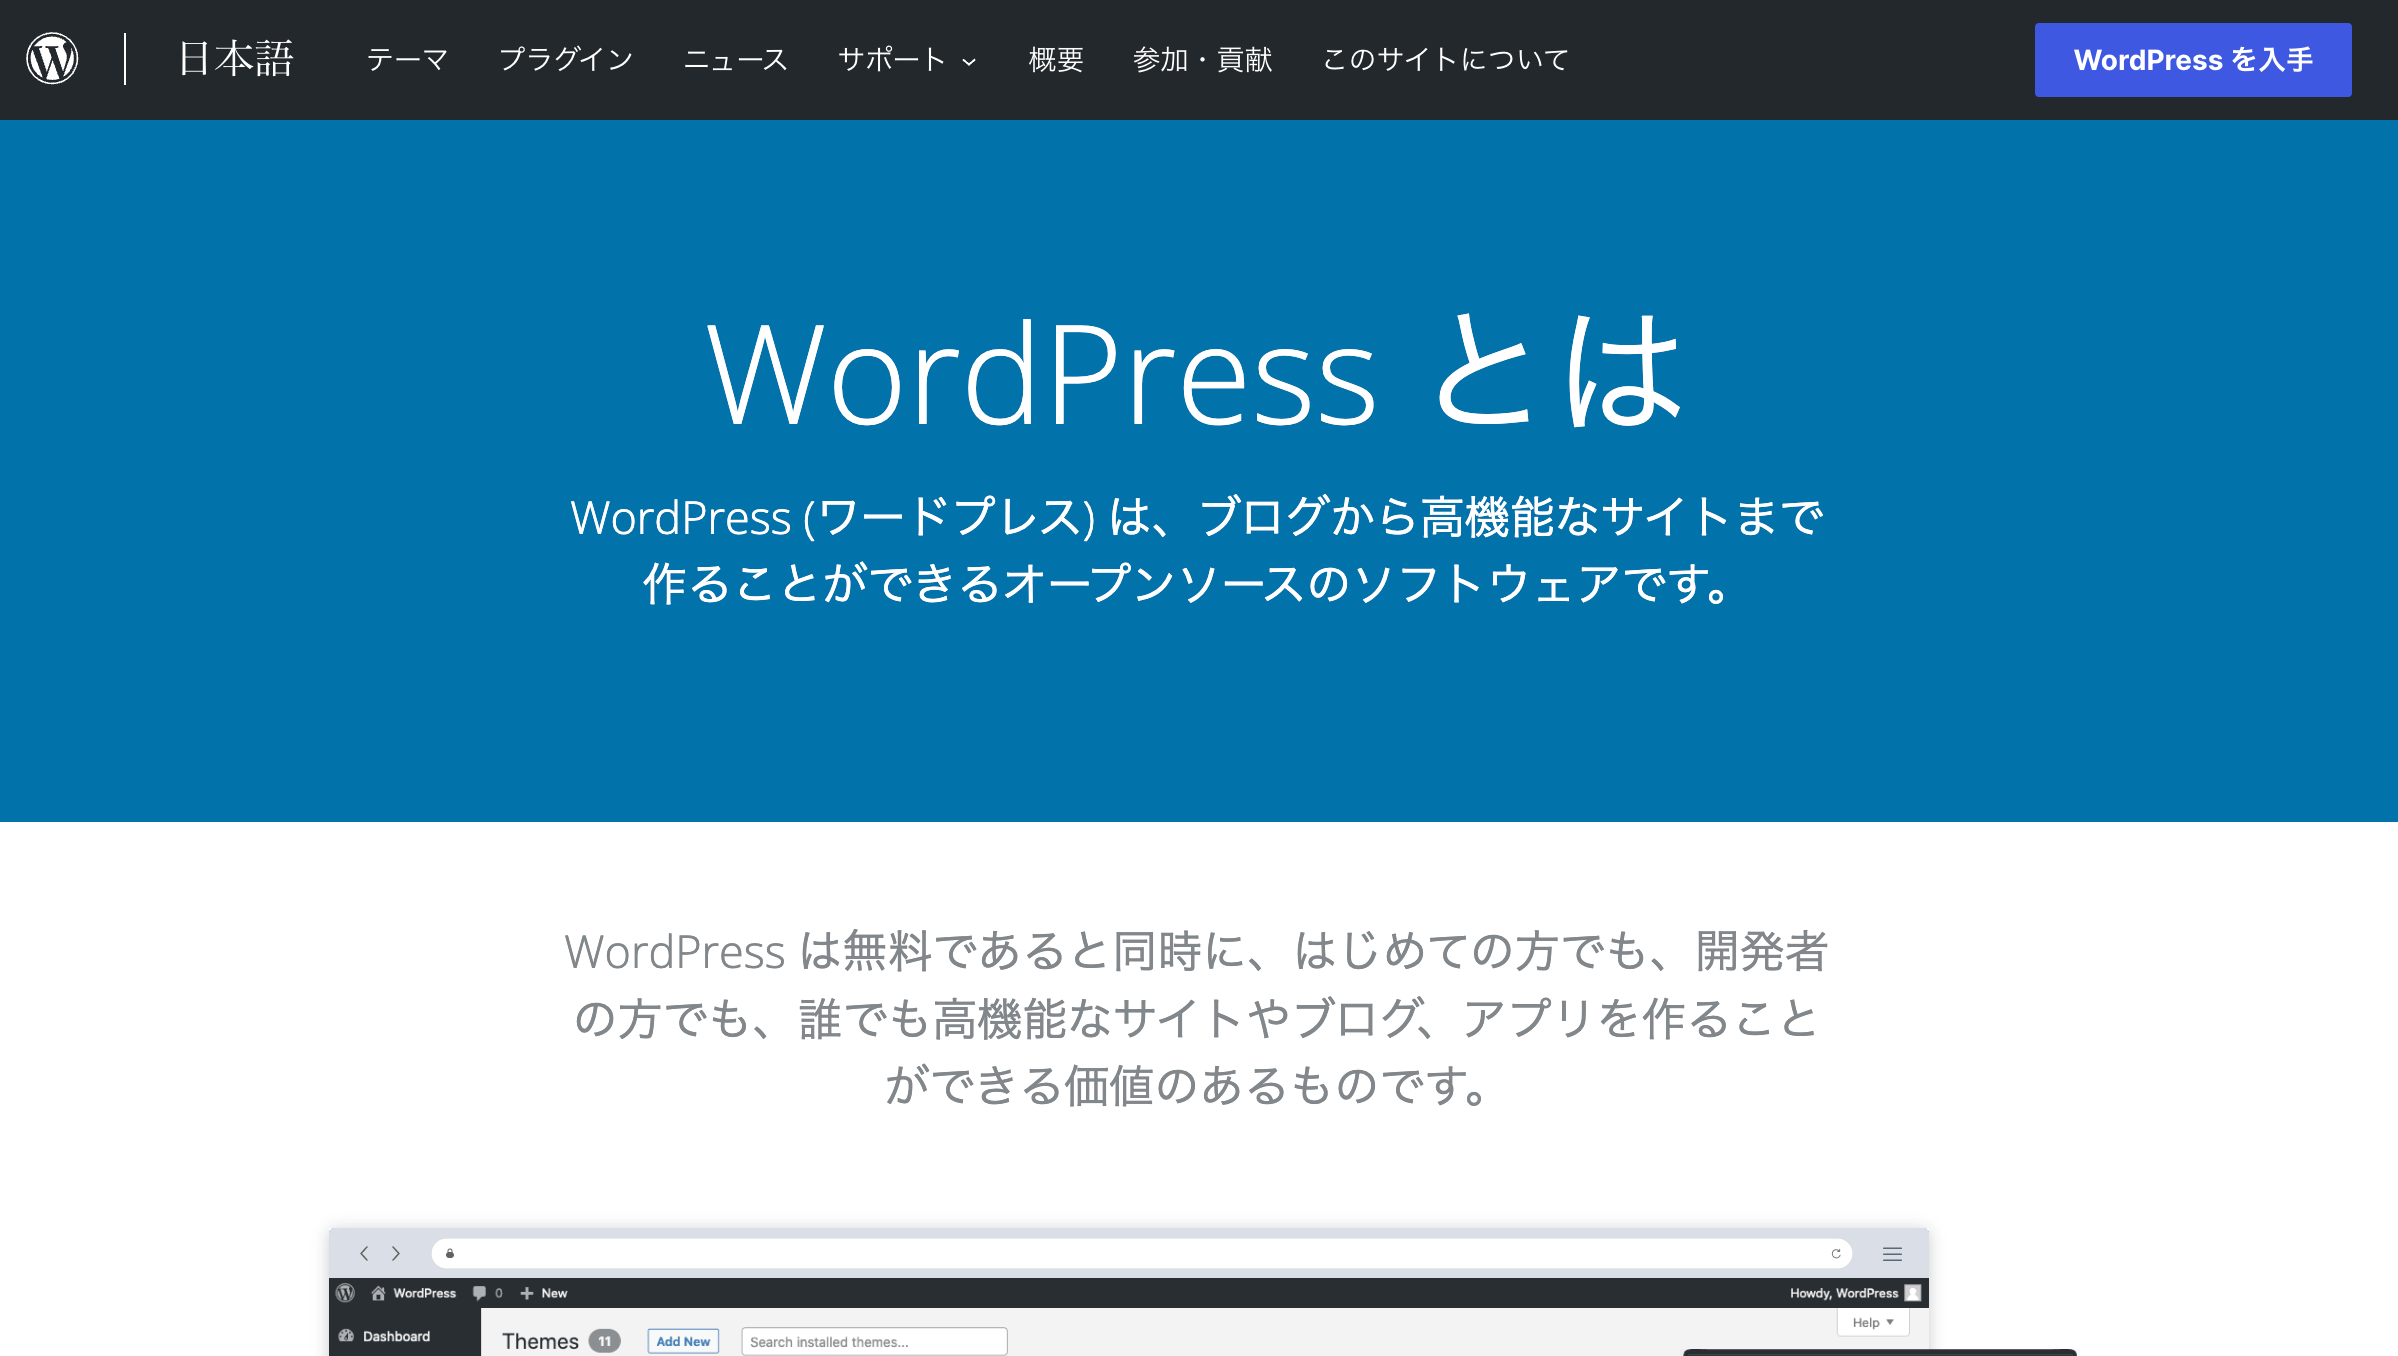 コーディング不要でホームページ作成できるソフト6選 Wordpress